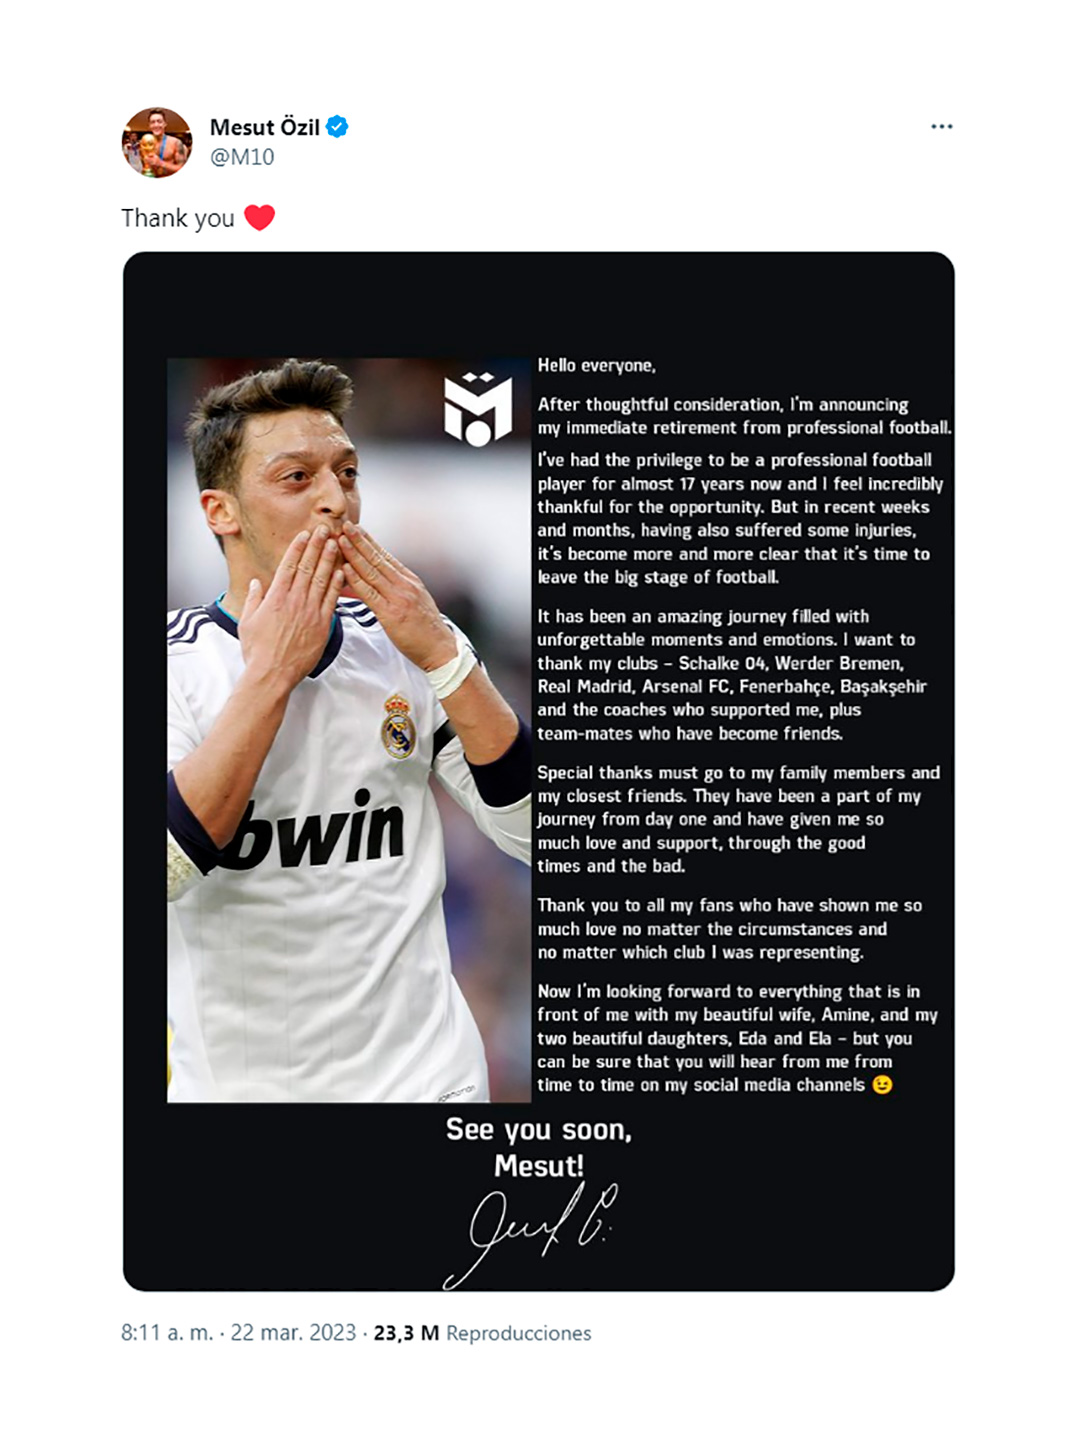 El mensaje de Mesut Özil para anunciar su retiro del fútbol